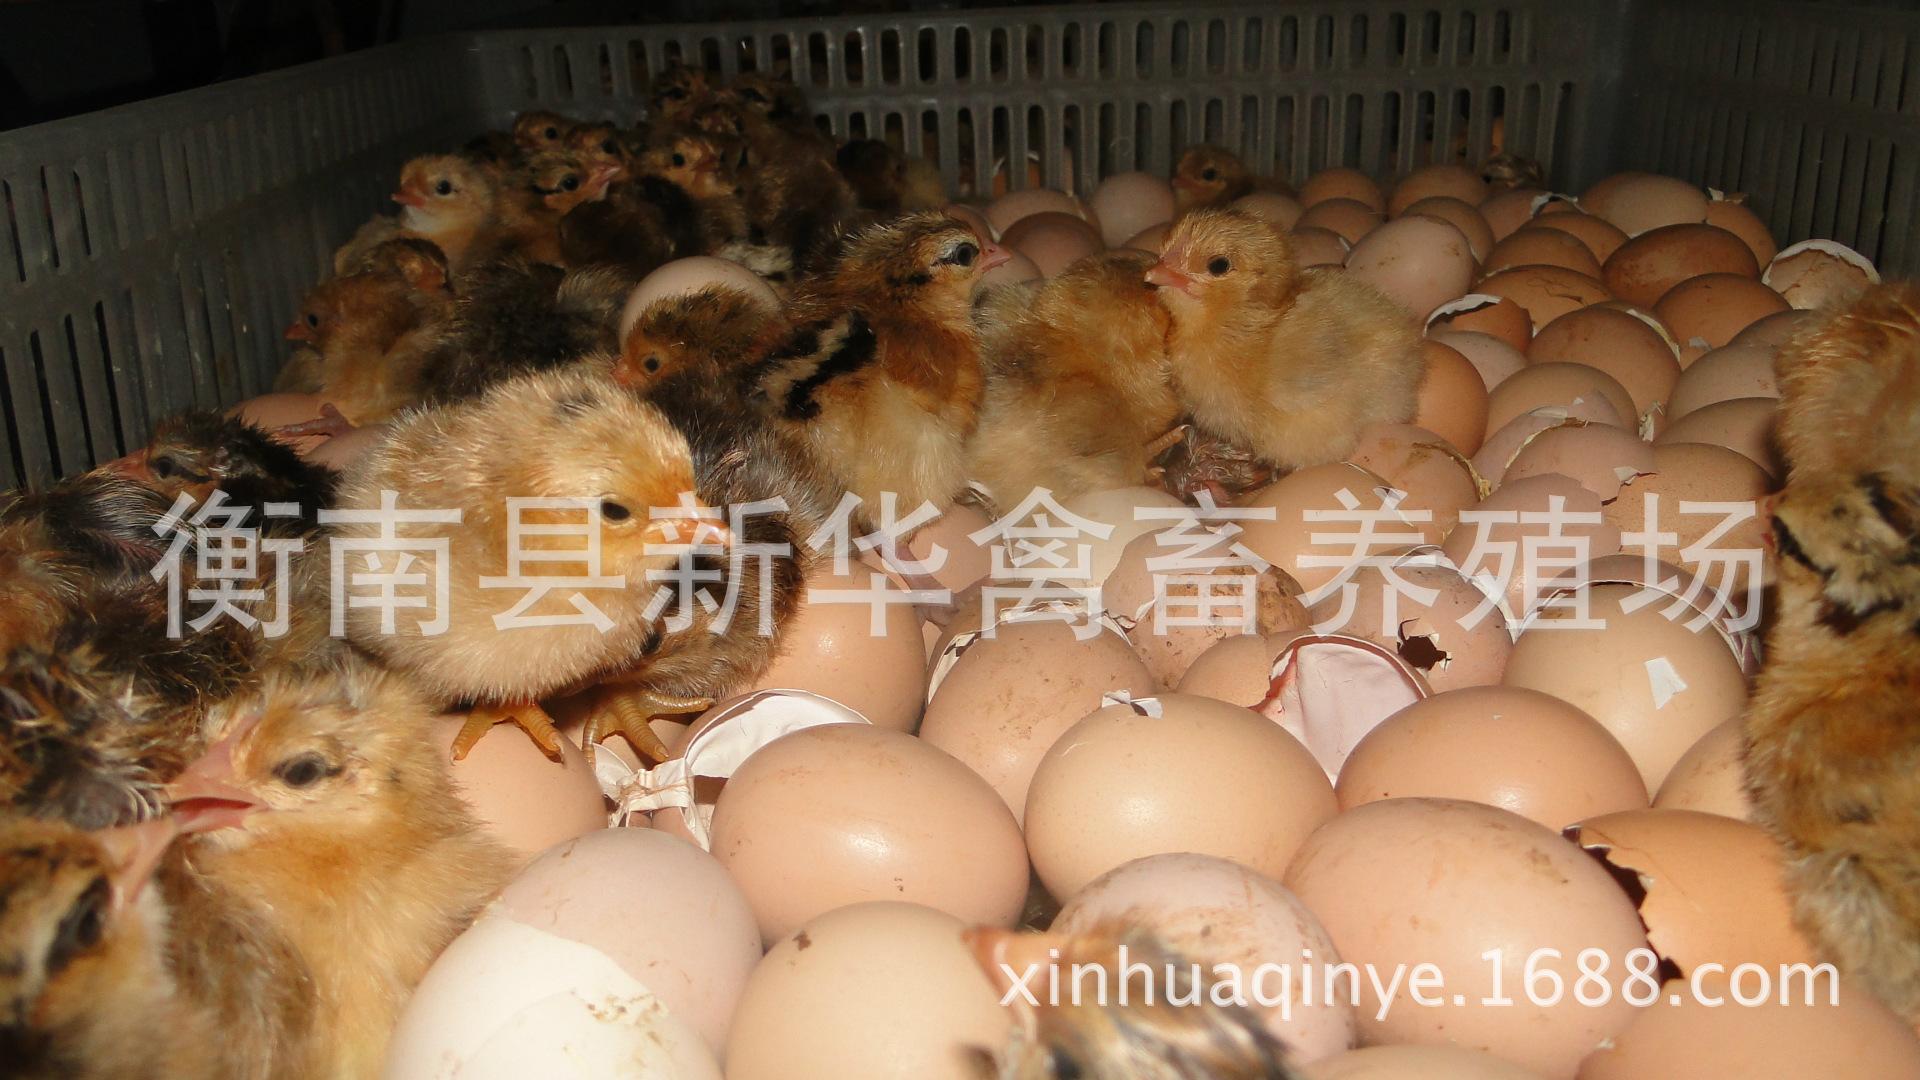 湖南衡南县星华禽业厂家直销大量供应优质青脚土鸡苗混合苗 动物种苗1